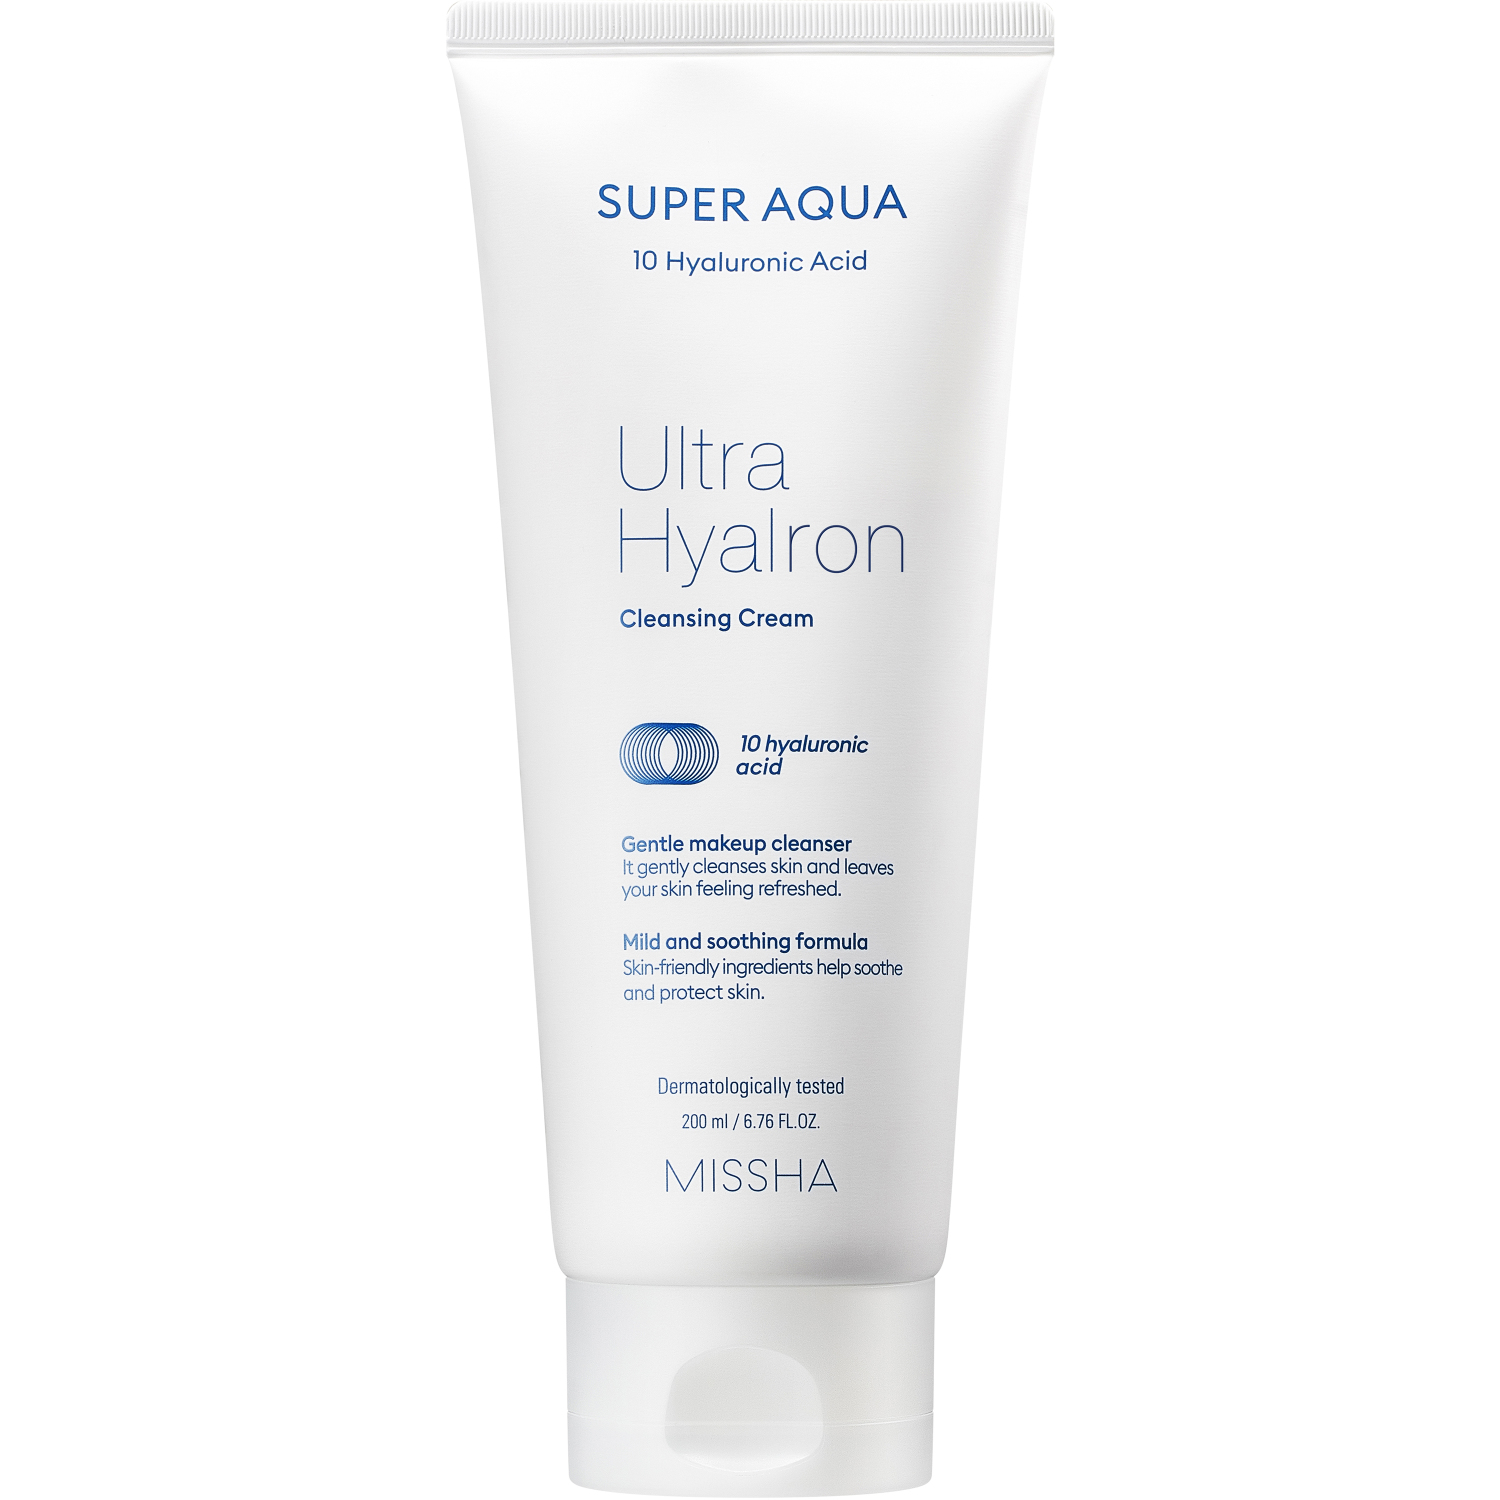 Пенка кремовая Missha Super Aqua Ultra Hyalron для умывания и снятия макияжа, 200 мл пенка для умывания bioaqua антиоксидантная с черникой 100 мл